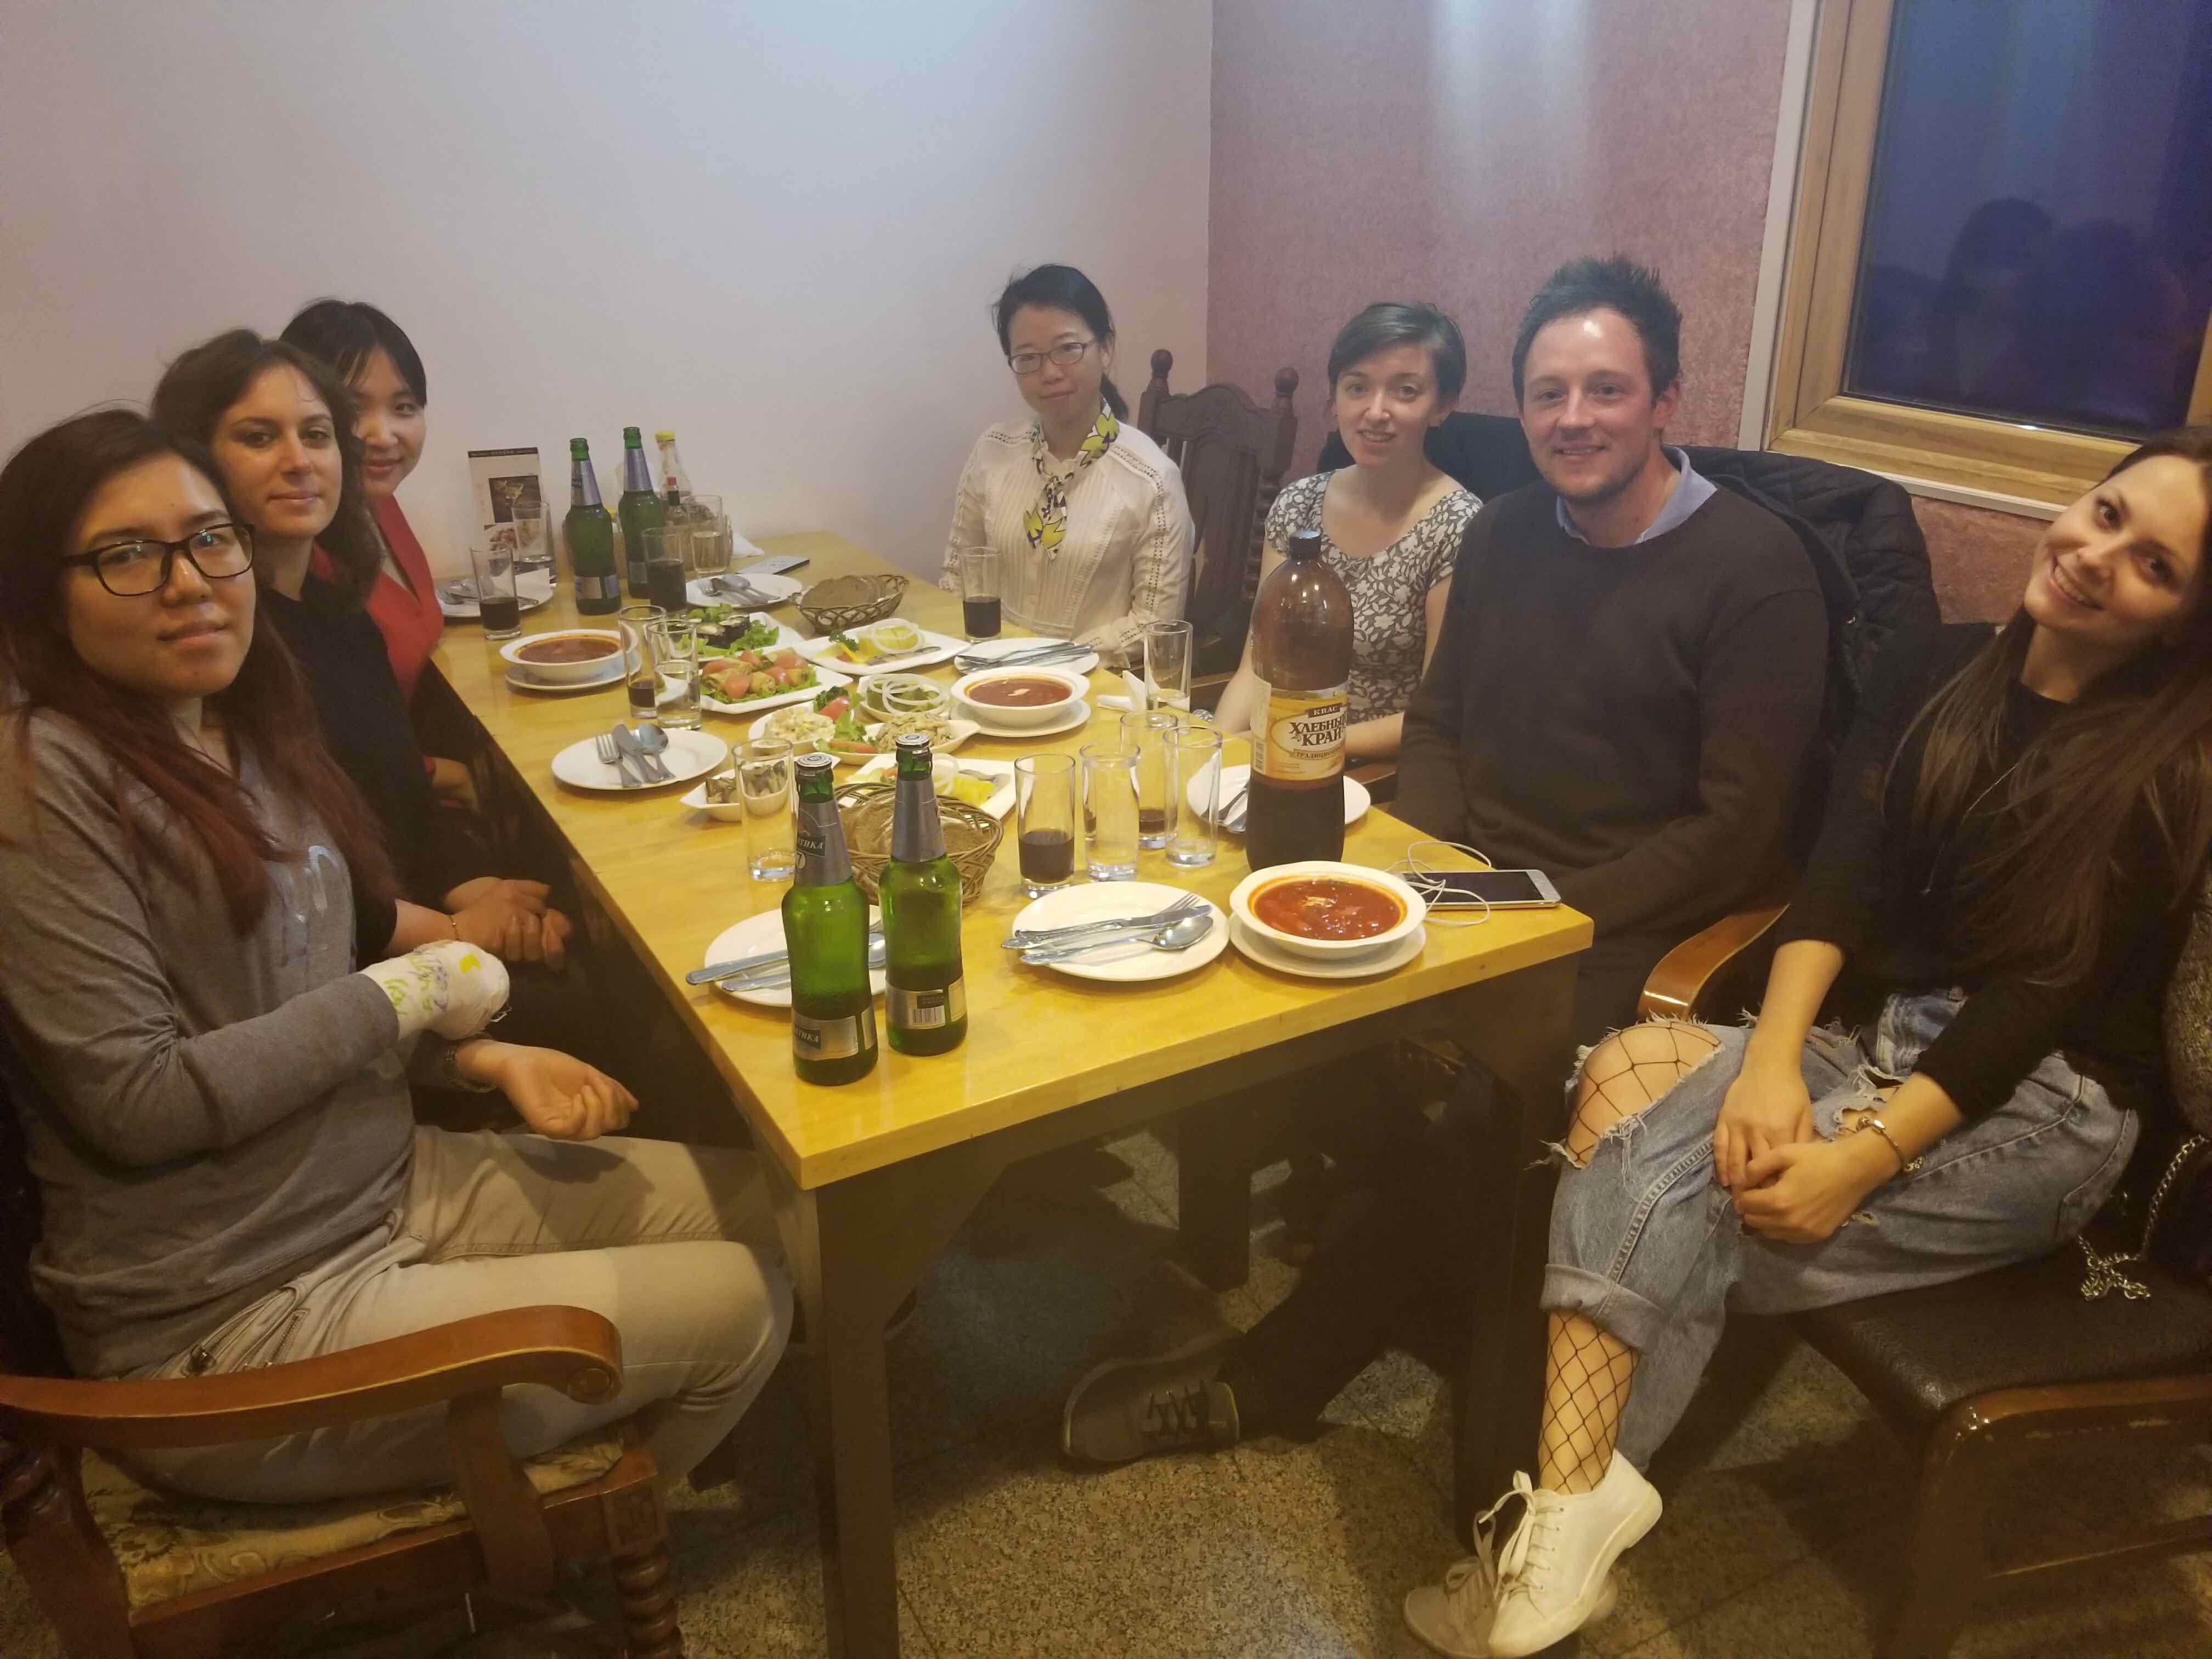 LTL Beijing Staff enjoying Dinner